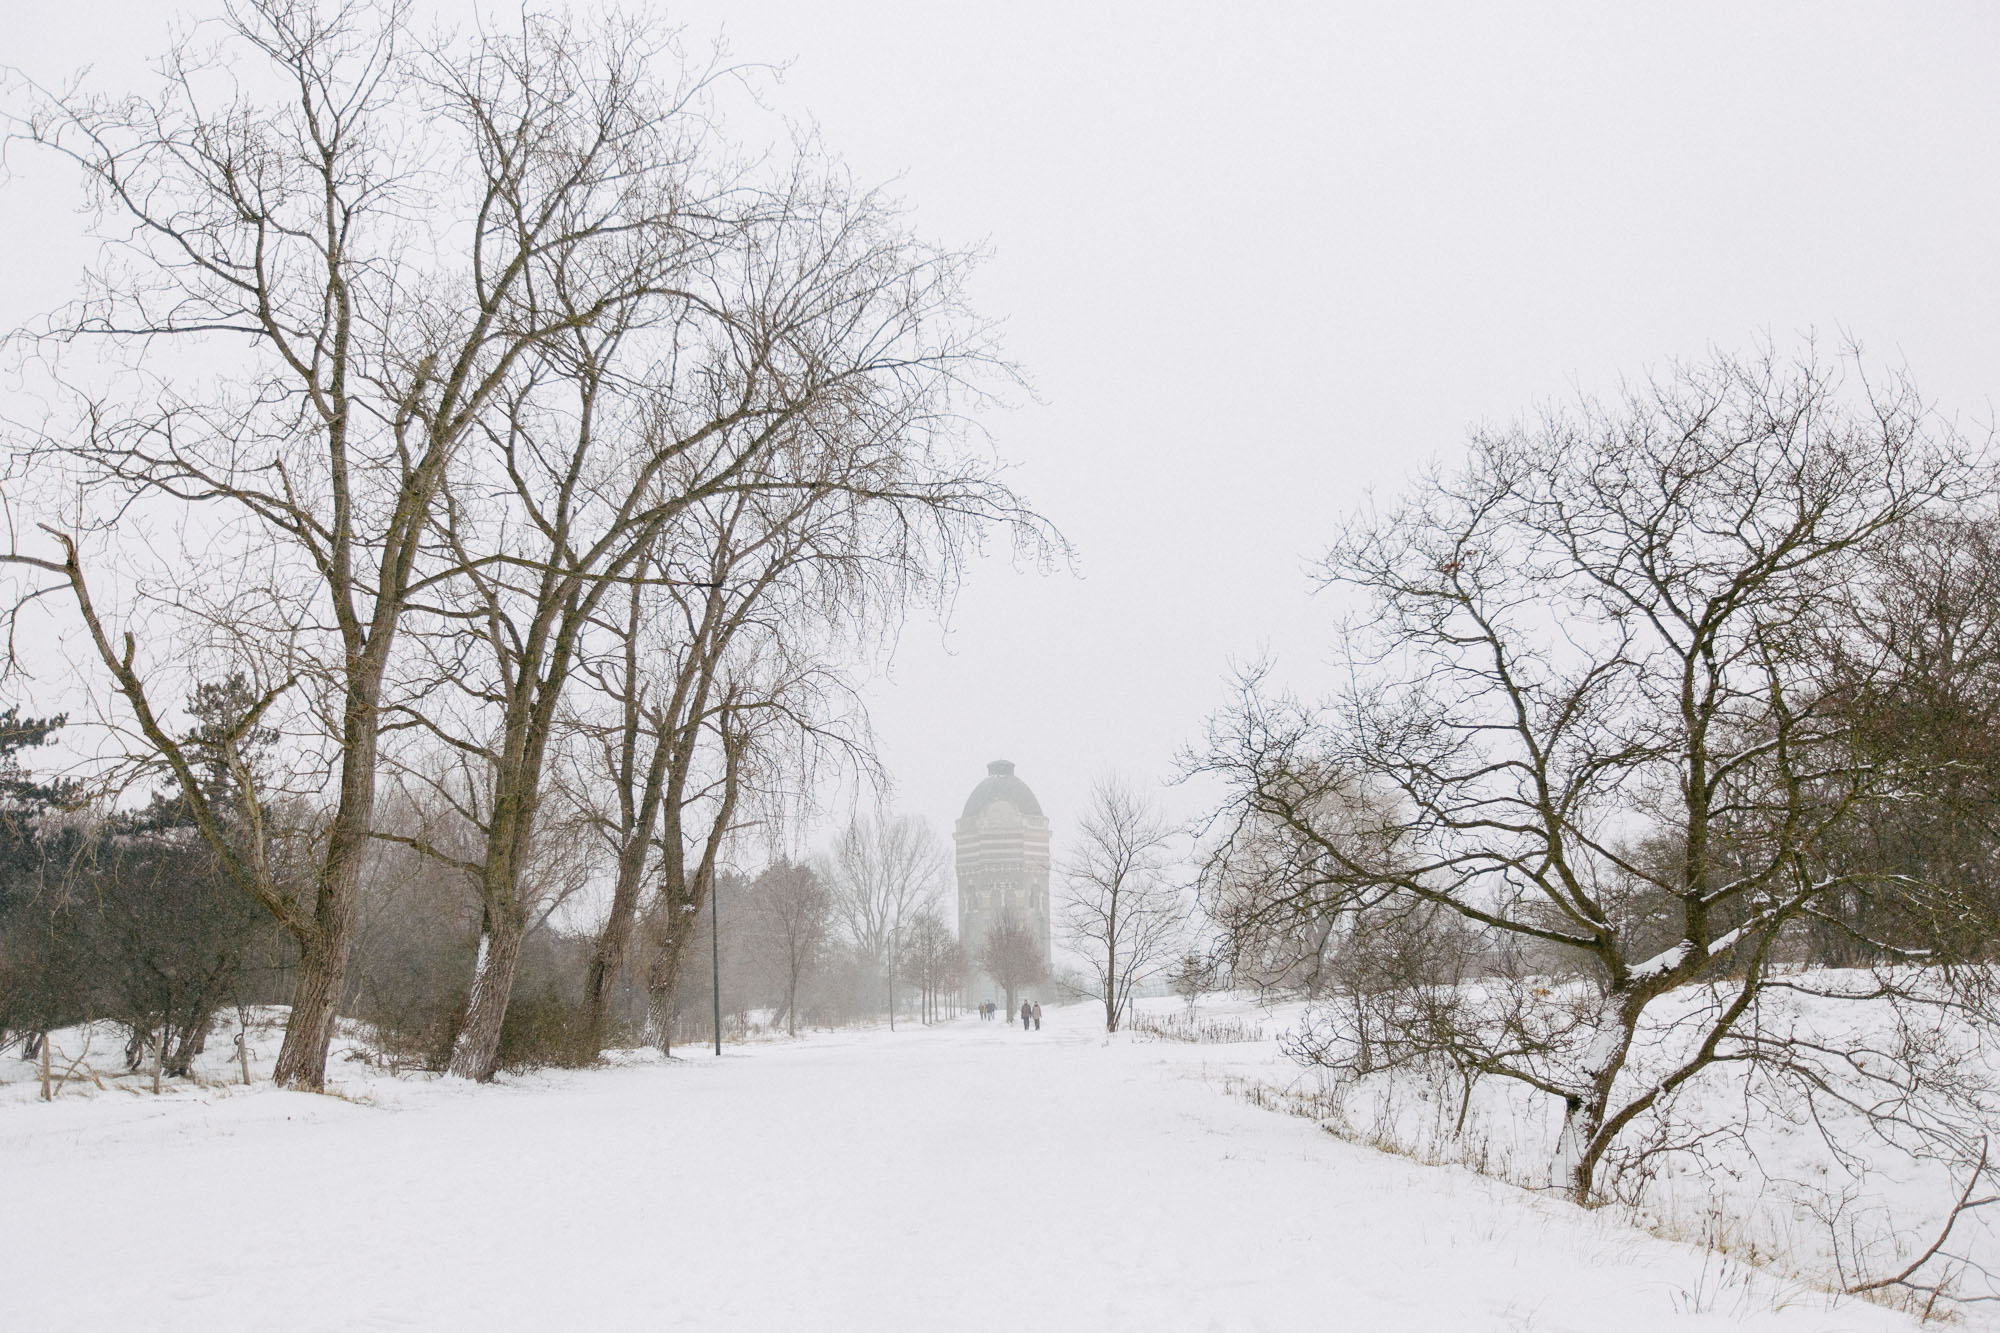 de Watertoren, Scheveningen, in the snow